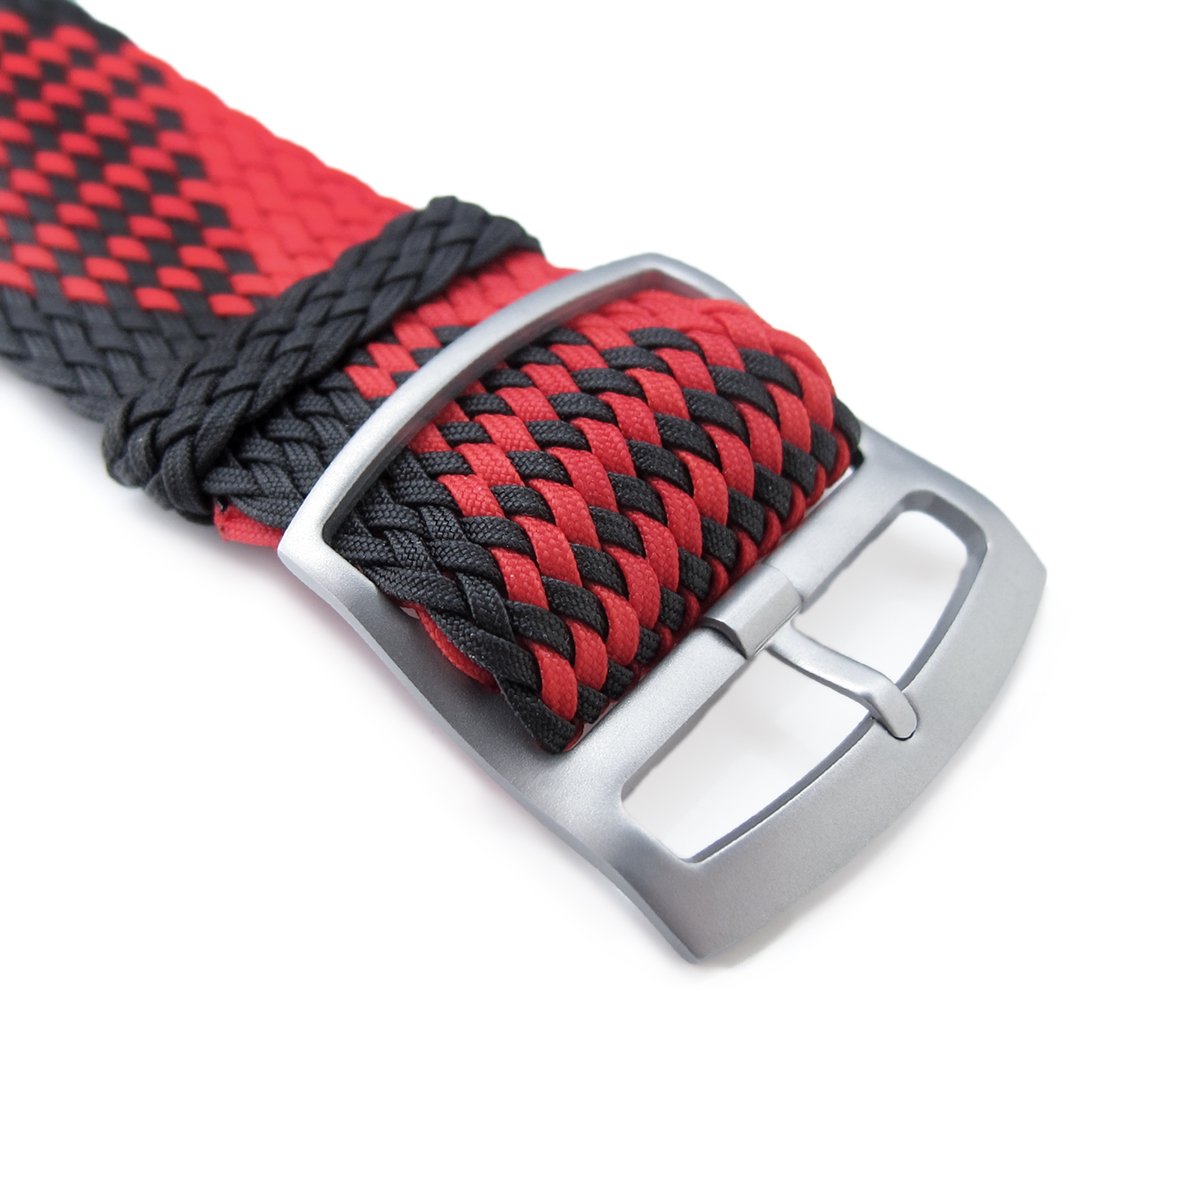 20 22mm MiLTAT Perlon Watch Strap Black & Red Sandblasted Ladder Lock Slider Buckle Strapcode Watch Bands